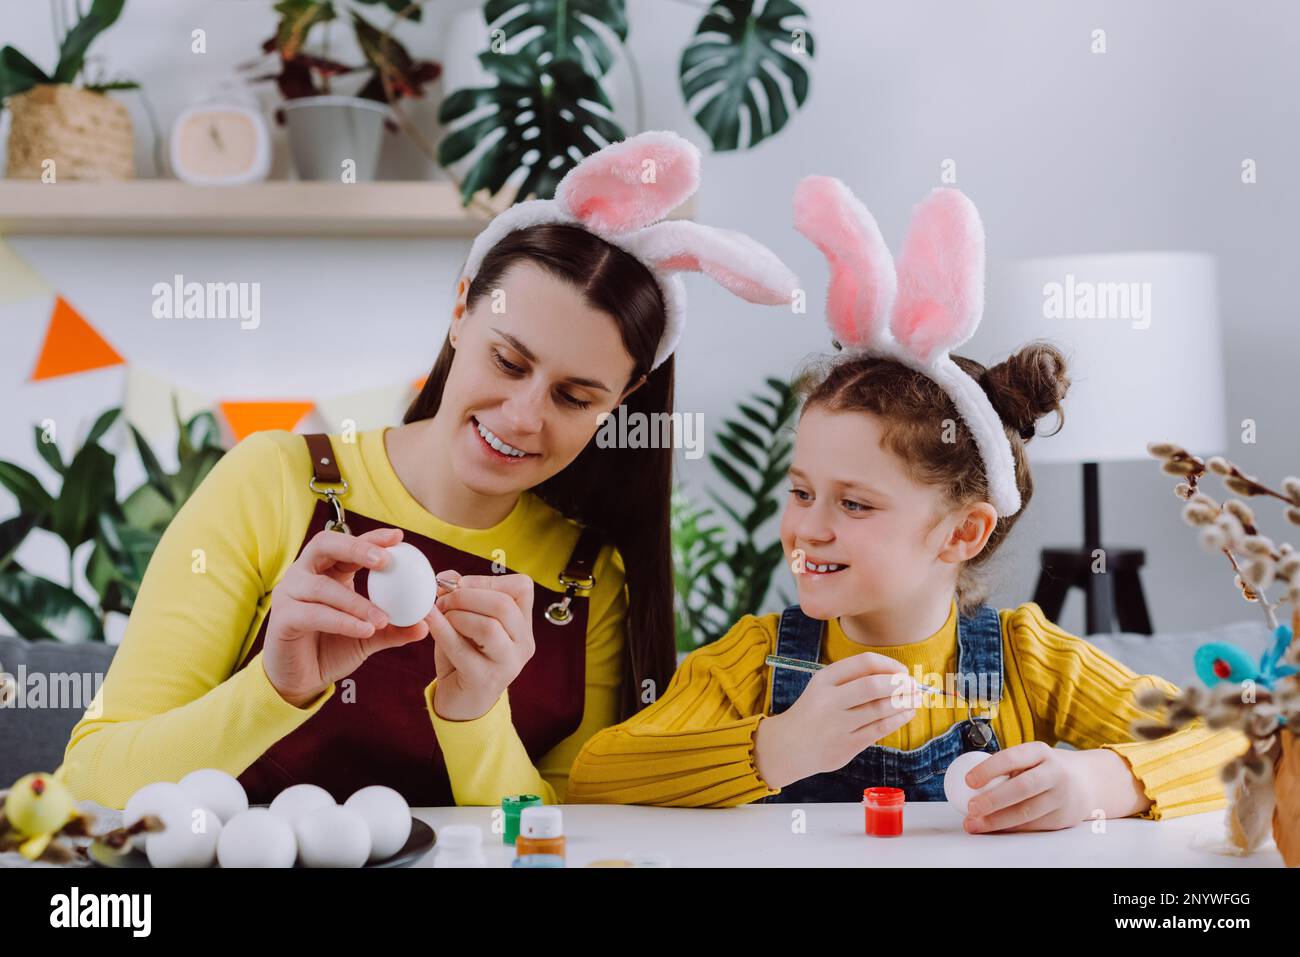 Jeune mère souriante enseignant jolie petite fille enfant peinture des œufs assis ensemble à la table, porte des oreilles de lapin. Fête de Pâques et tradition Banque D'Images